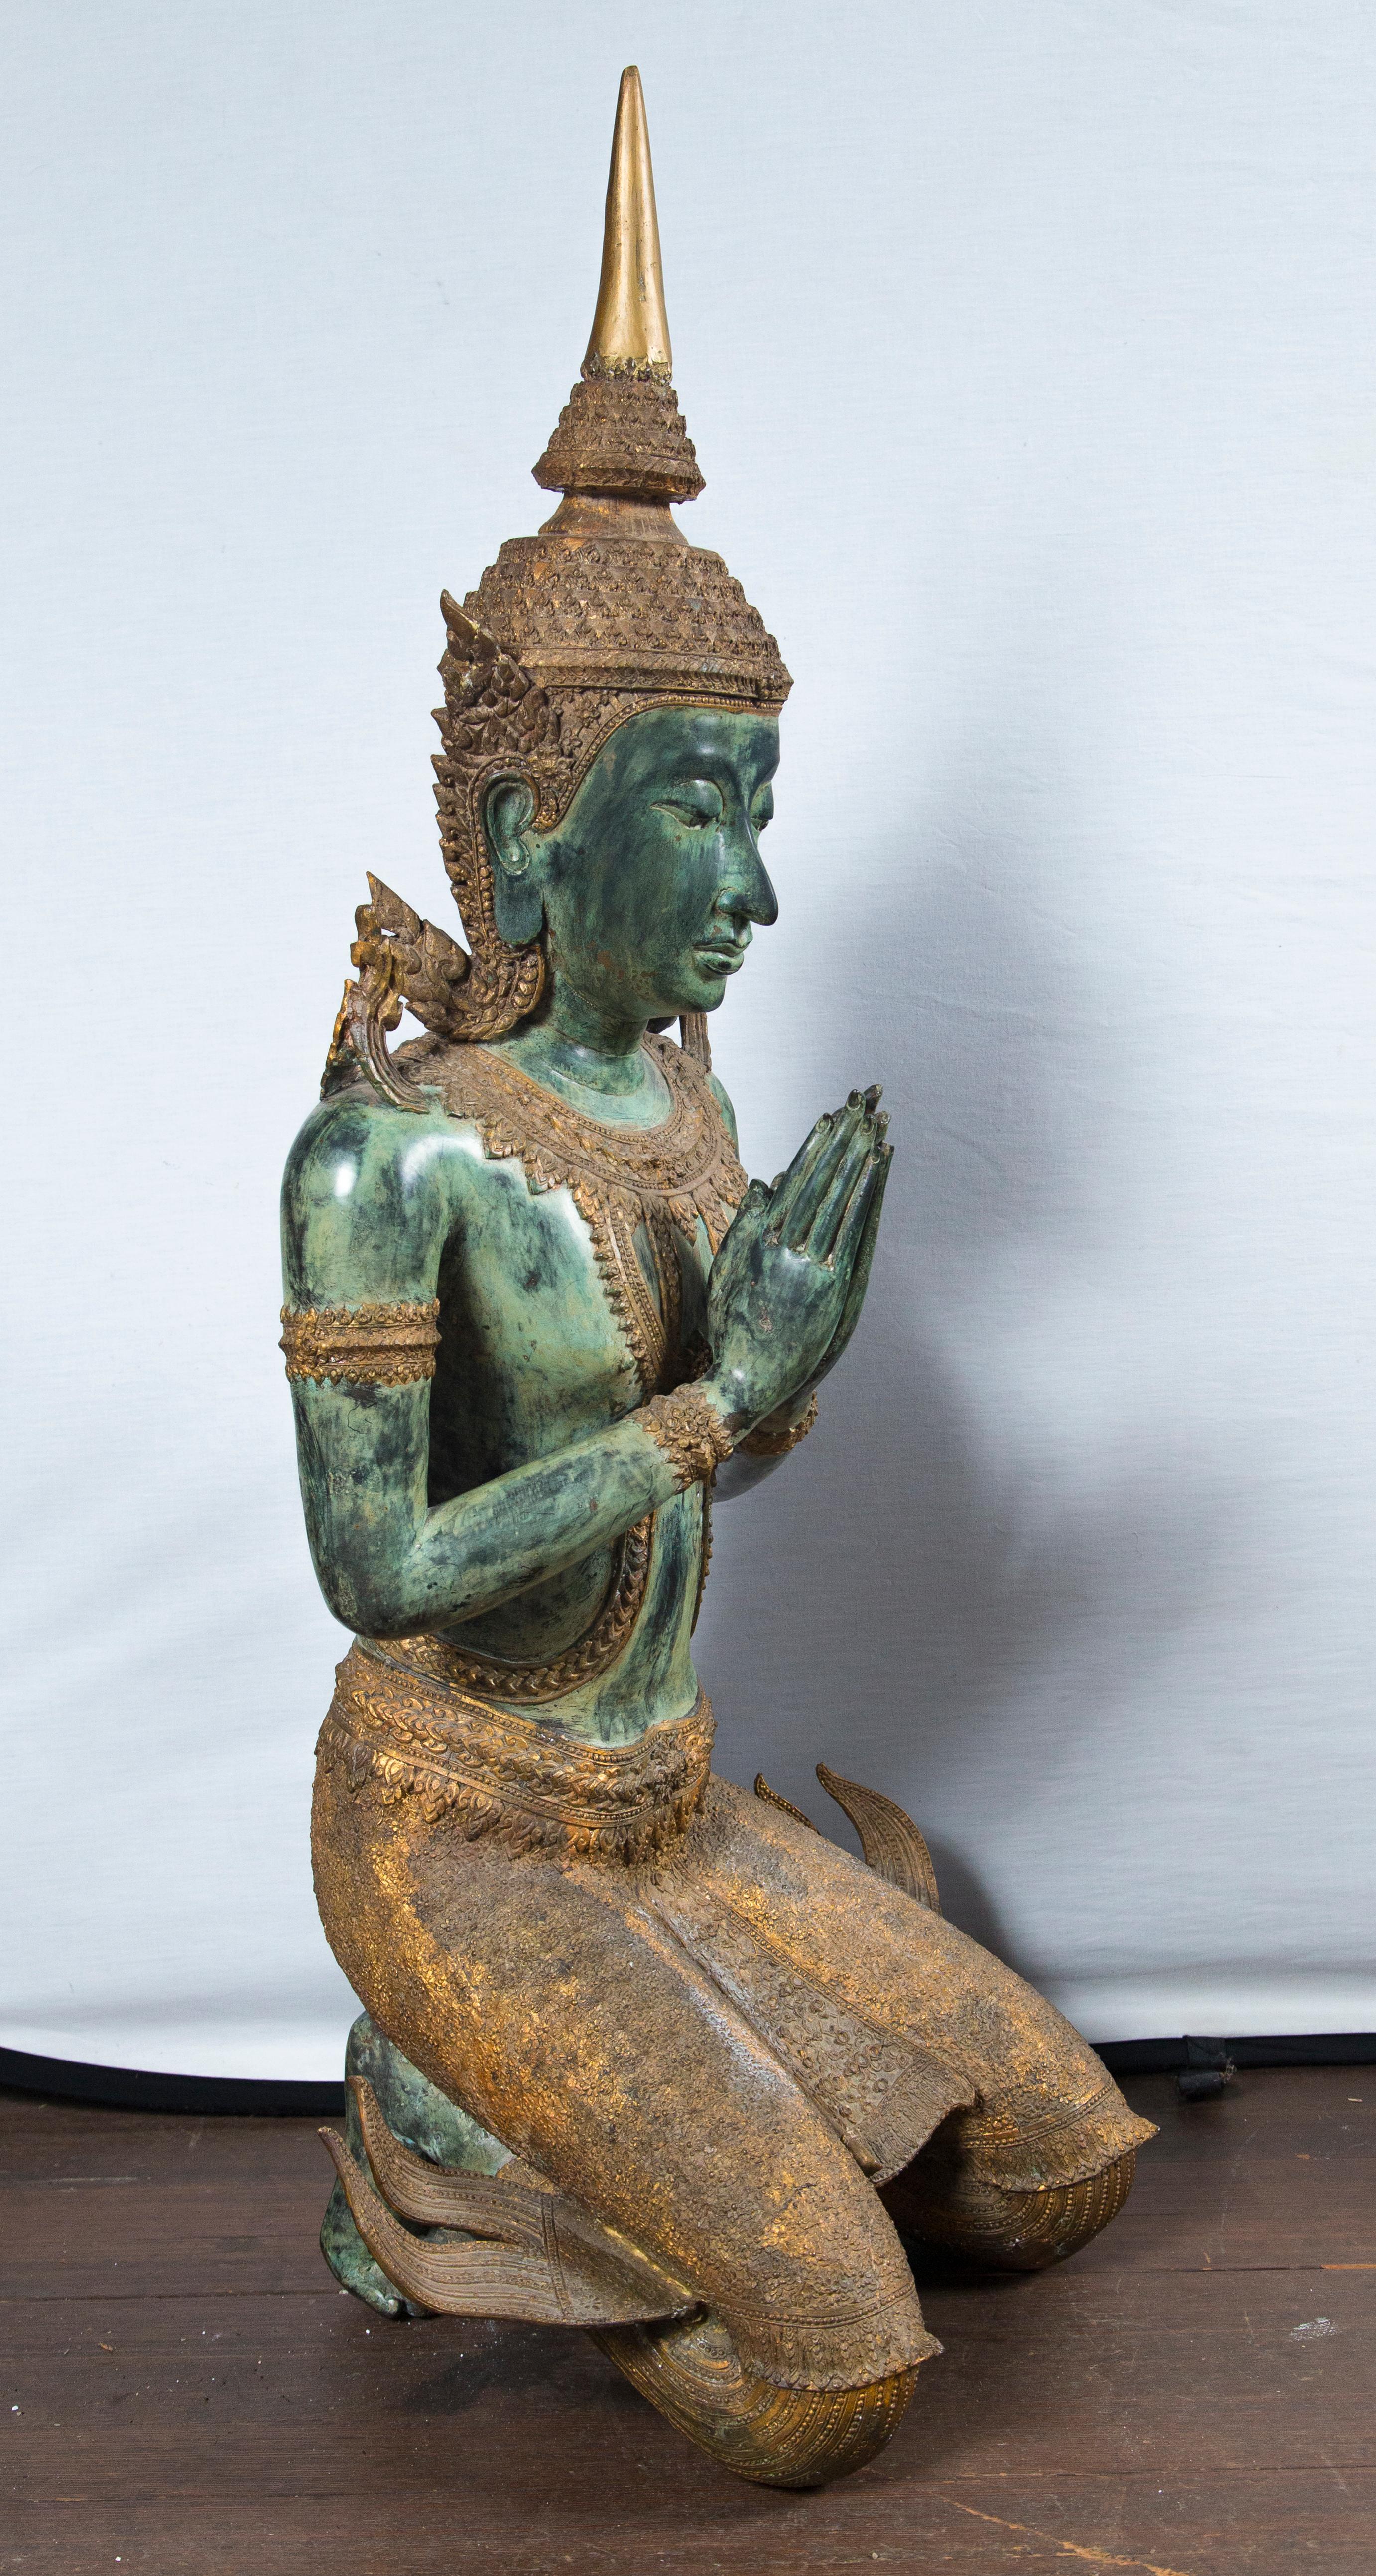 Grande paire de bouddhas thaïlandais en bronze de style ancien, agenouillés et en prière.
Détails complexes, pièce de tête dorée. Probablement au milieu du 20e siècle.